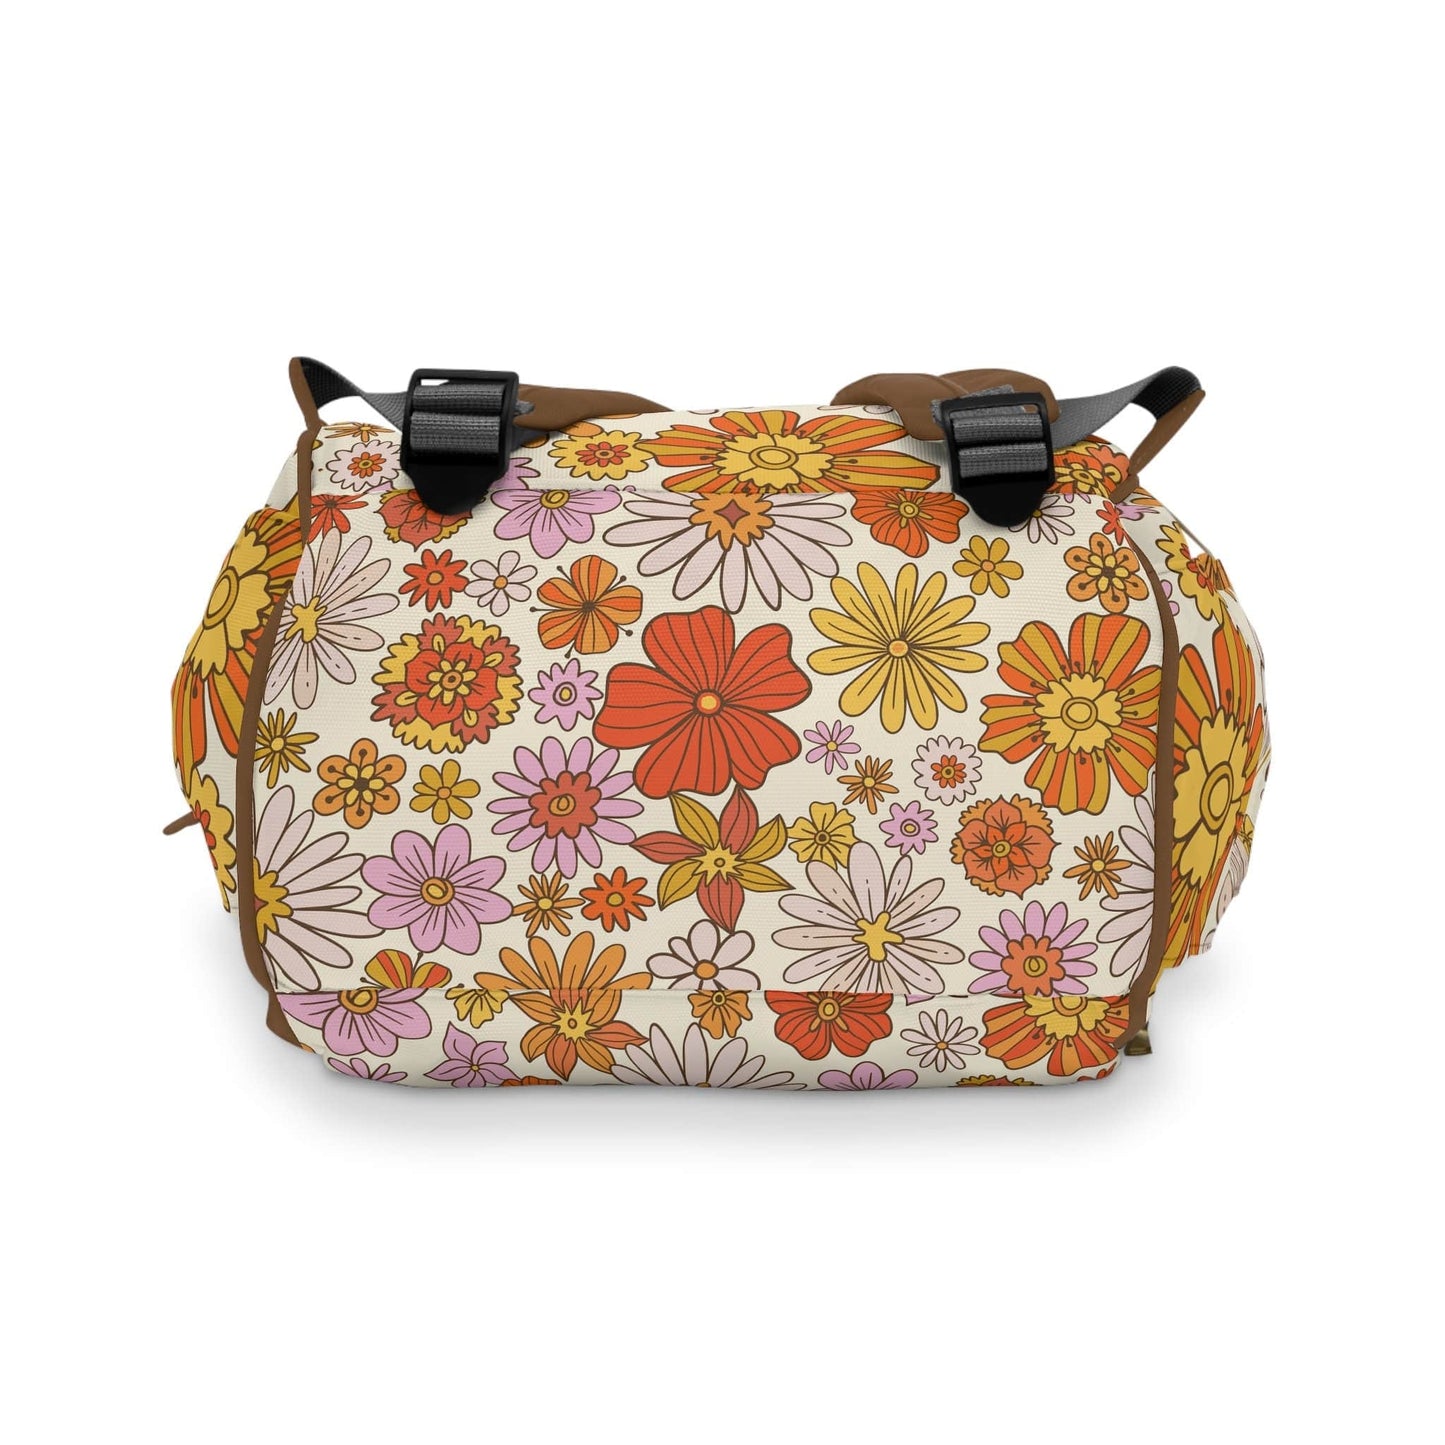 Kate McEnroe New York Retro 70s Groovy Hippie Flower Power Multifunctional Diaper Backpack, MCM Weekender Bag, Carry-on Luggage, Multipurpose Backpack Diaper Bags 30493279754033541251